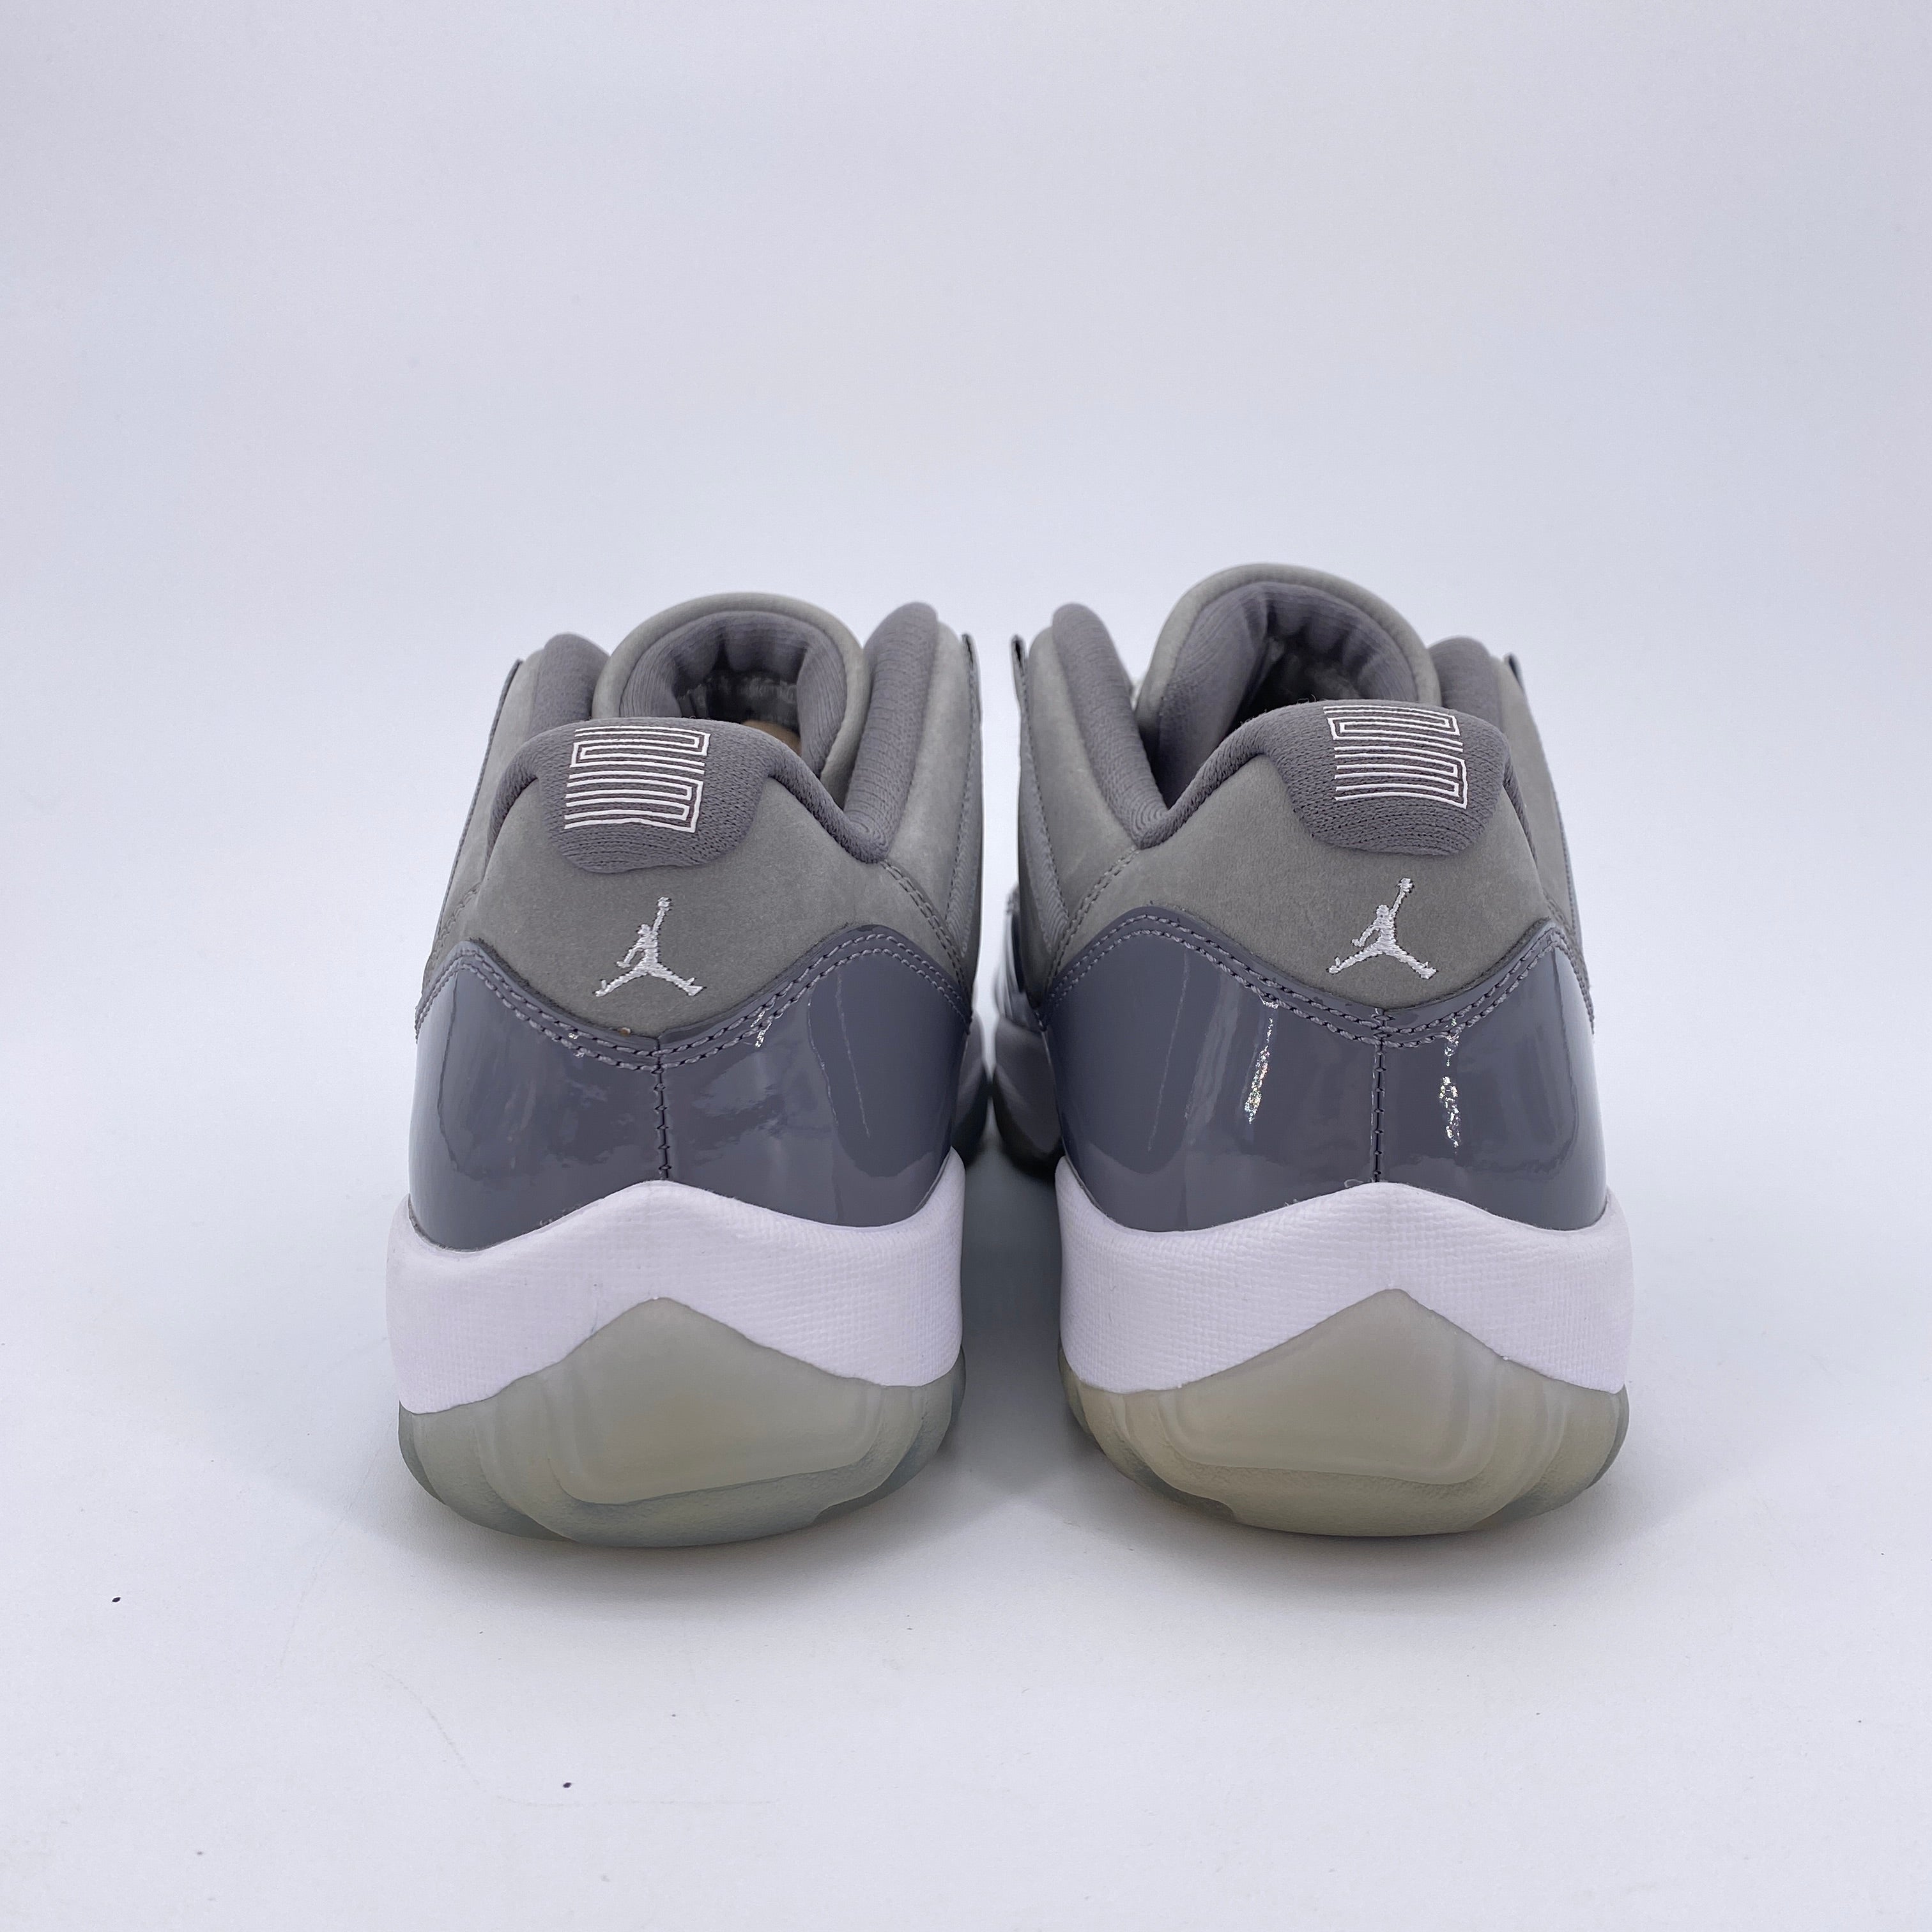 Air Jordan 11 Retro Low &quot;Cool Grey&quot; 2018 New (Cond) Size 11